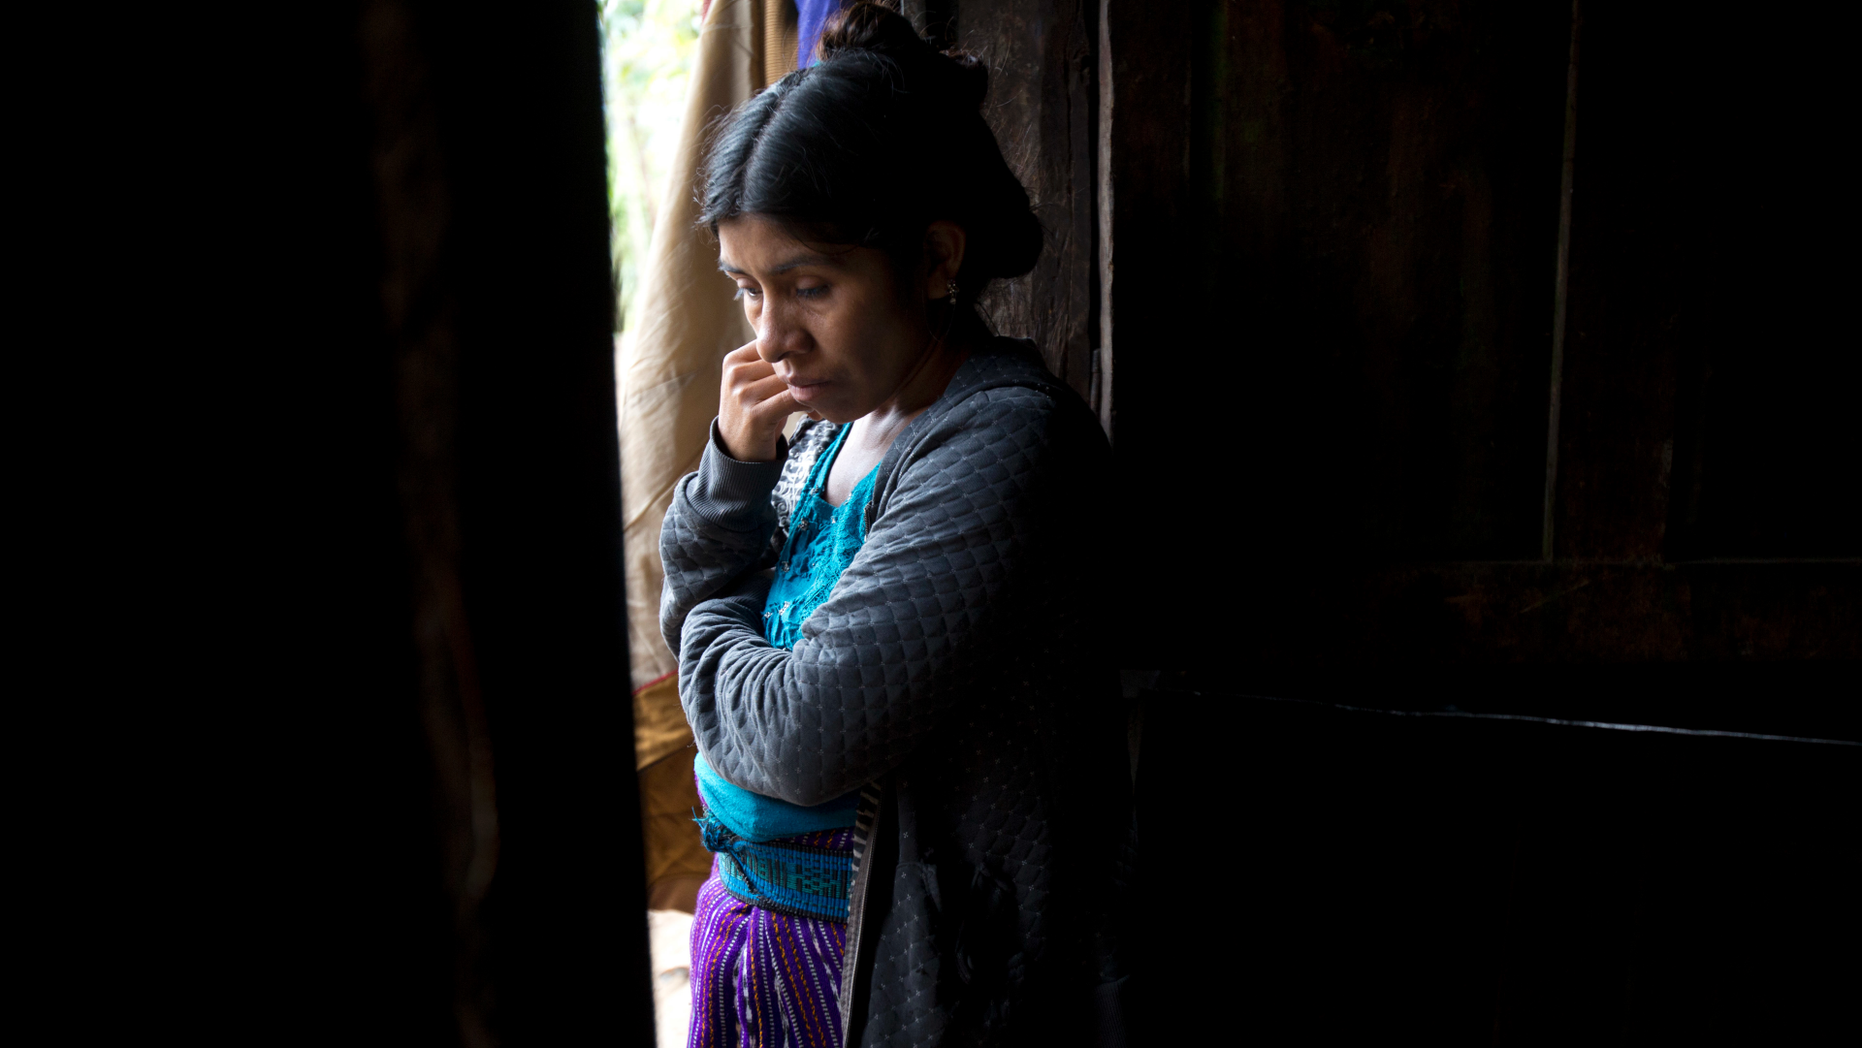 2nd child dead in US custody mourned in Guatemala village